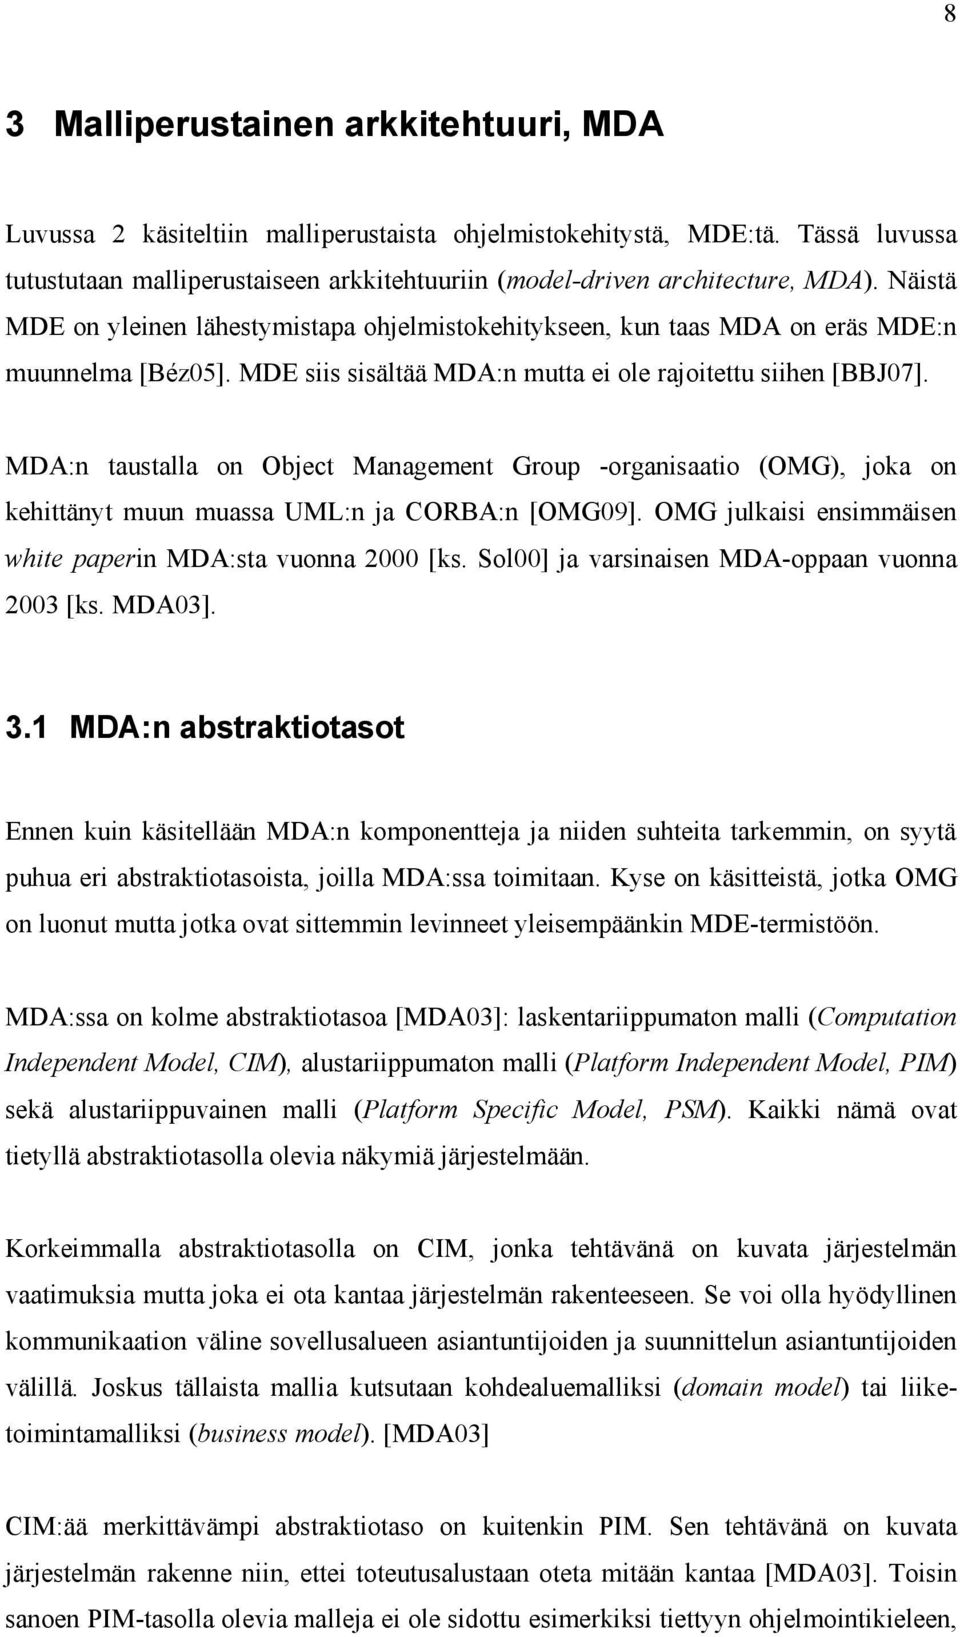 MDE siis sisältää MDA:n mutta ei ole rajoitettu siihen [BBJ07]. MDA:n taustalla on Object Management Group -organisaatio (OMG), joka on kehittänyt muun muassa UML:n ja CORBA:n [OMG09].